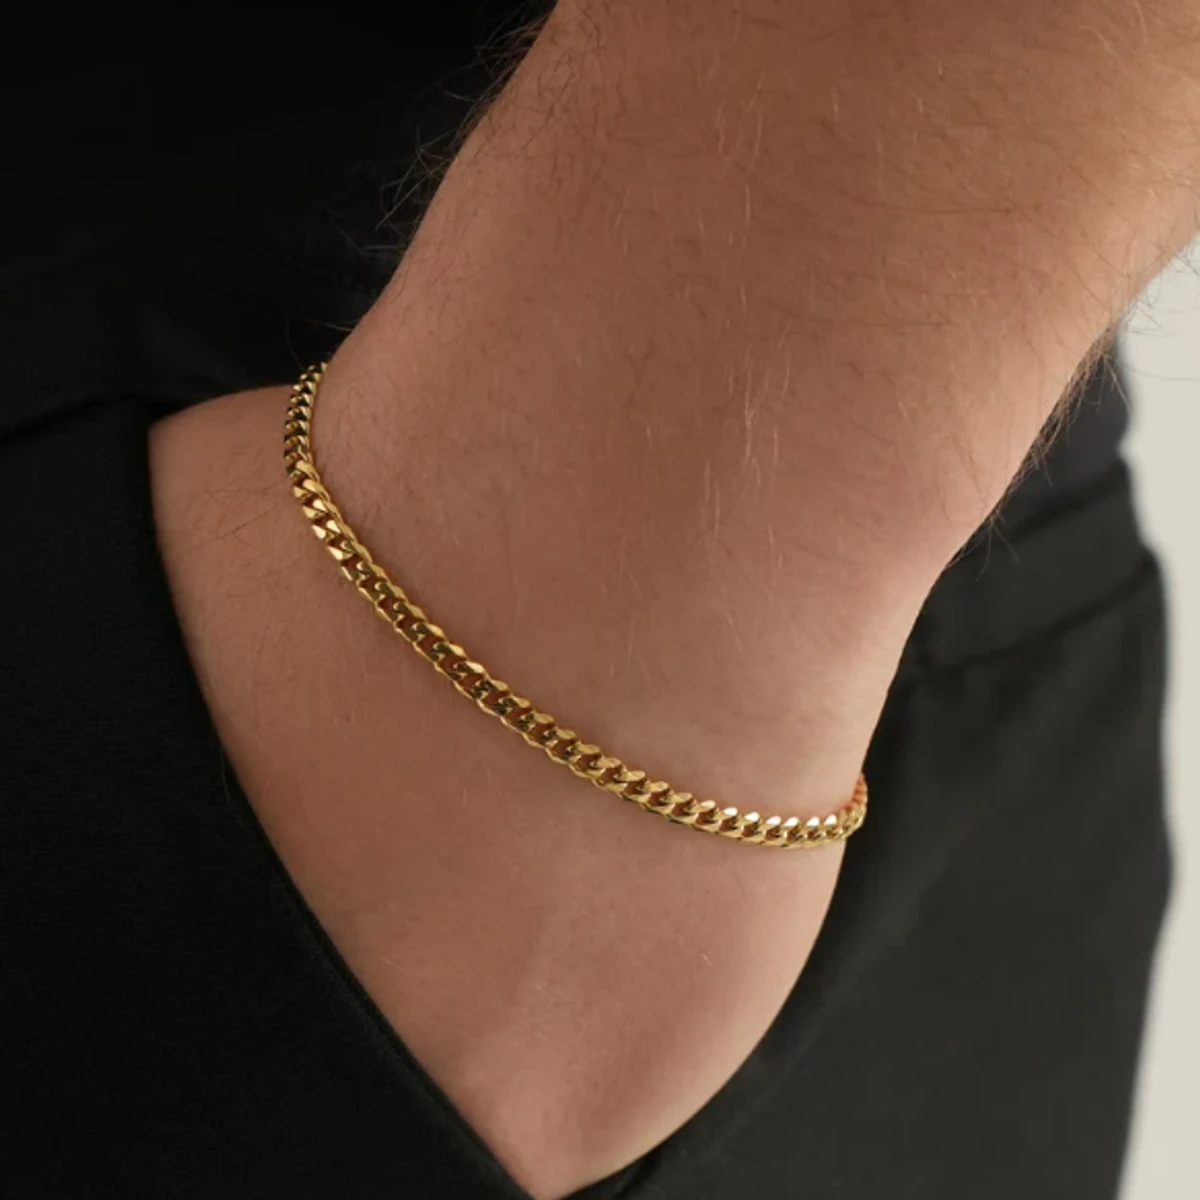 Fashionable New Steel Bracelet For Men- Golden